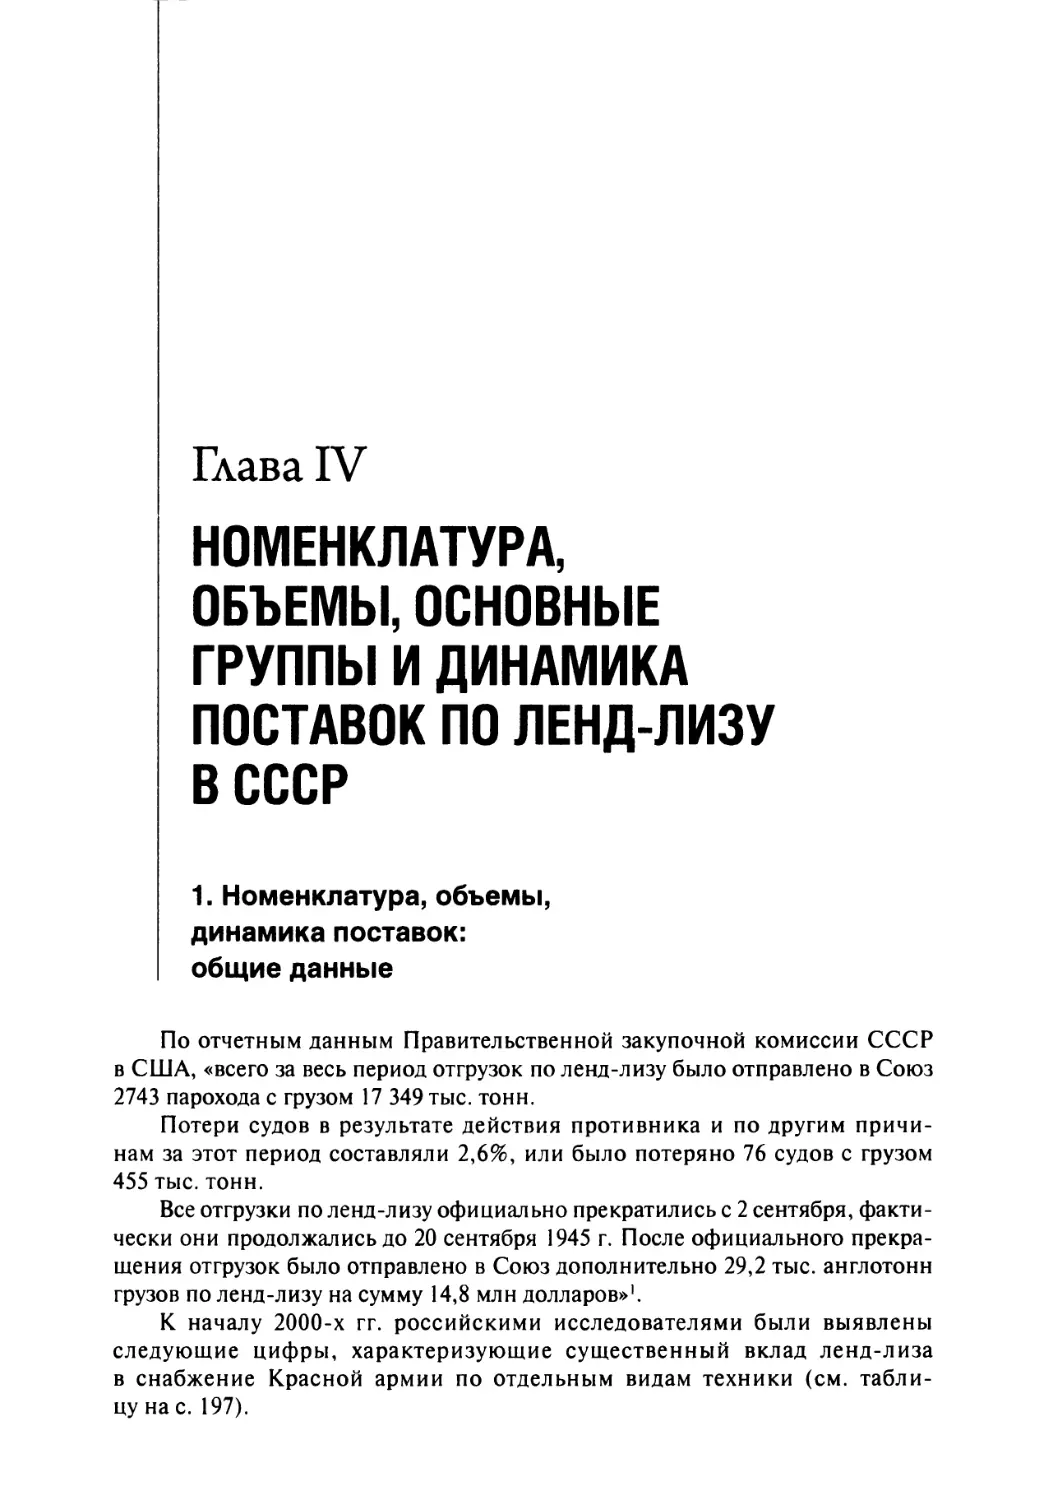 Глава IV. Номенклатура, объемы, основные группы и динамика поставок по ленд-лизу в СССР